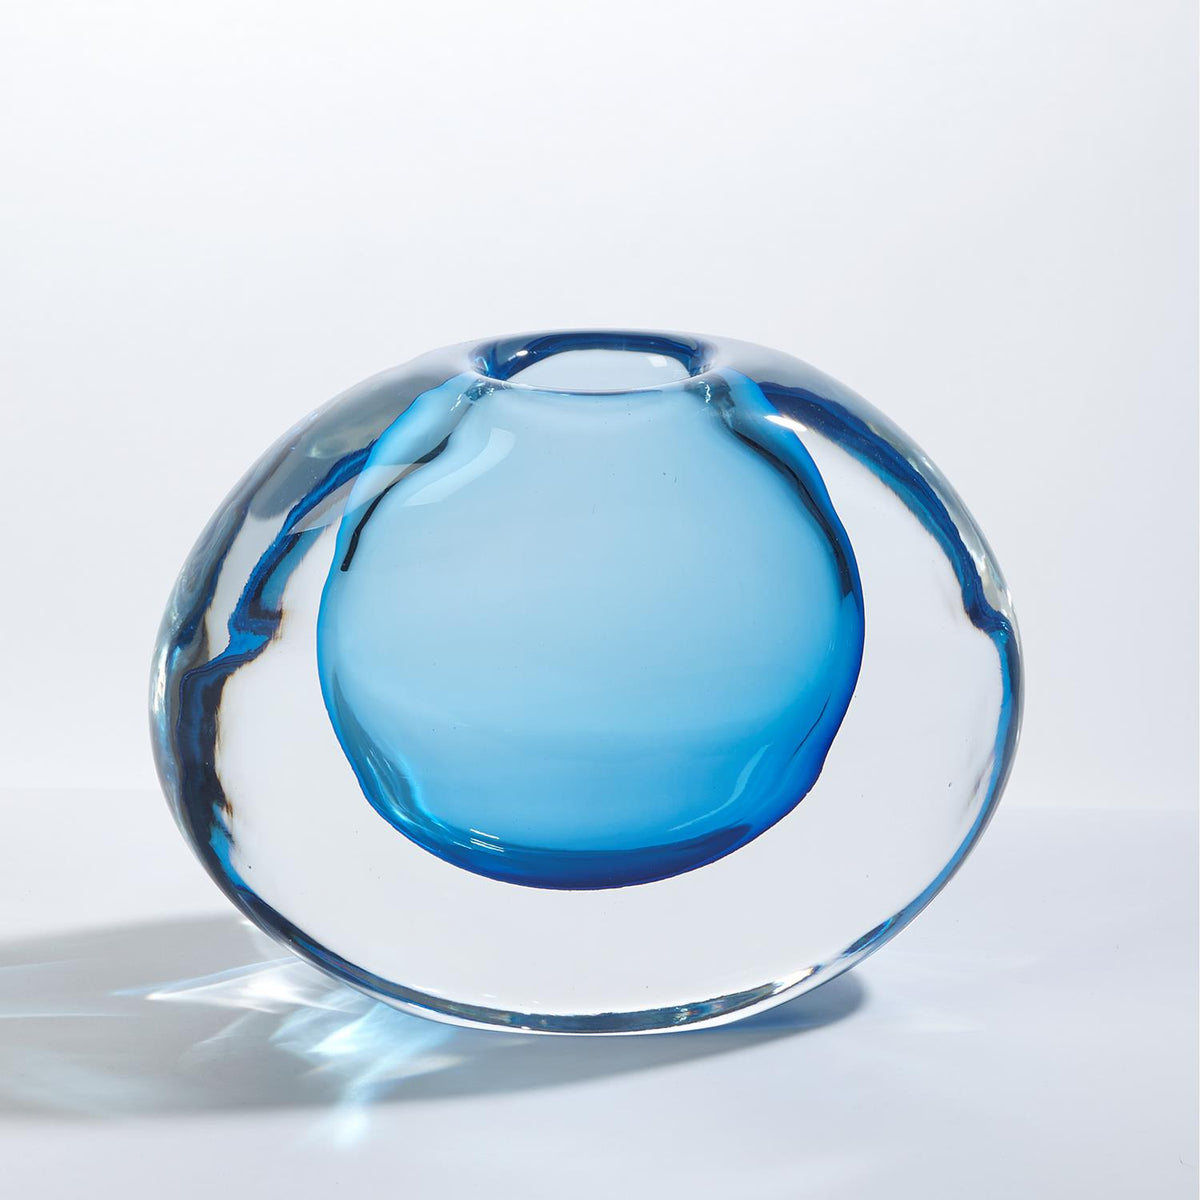 Offset Vase-Light Blue-Global Views-Vases-Artistic Elements